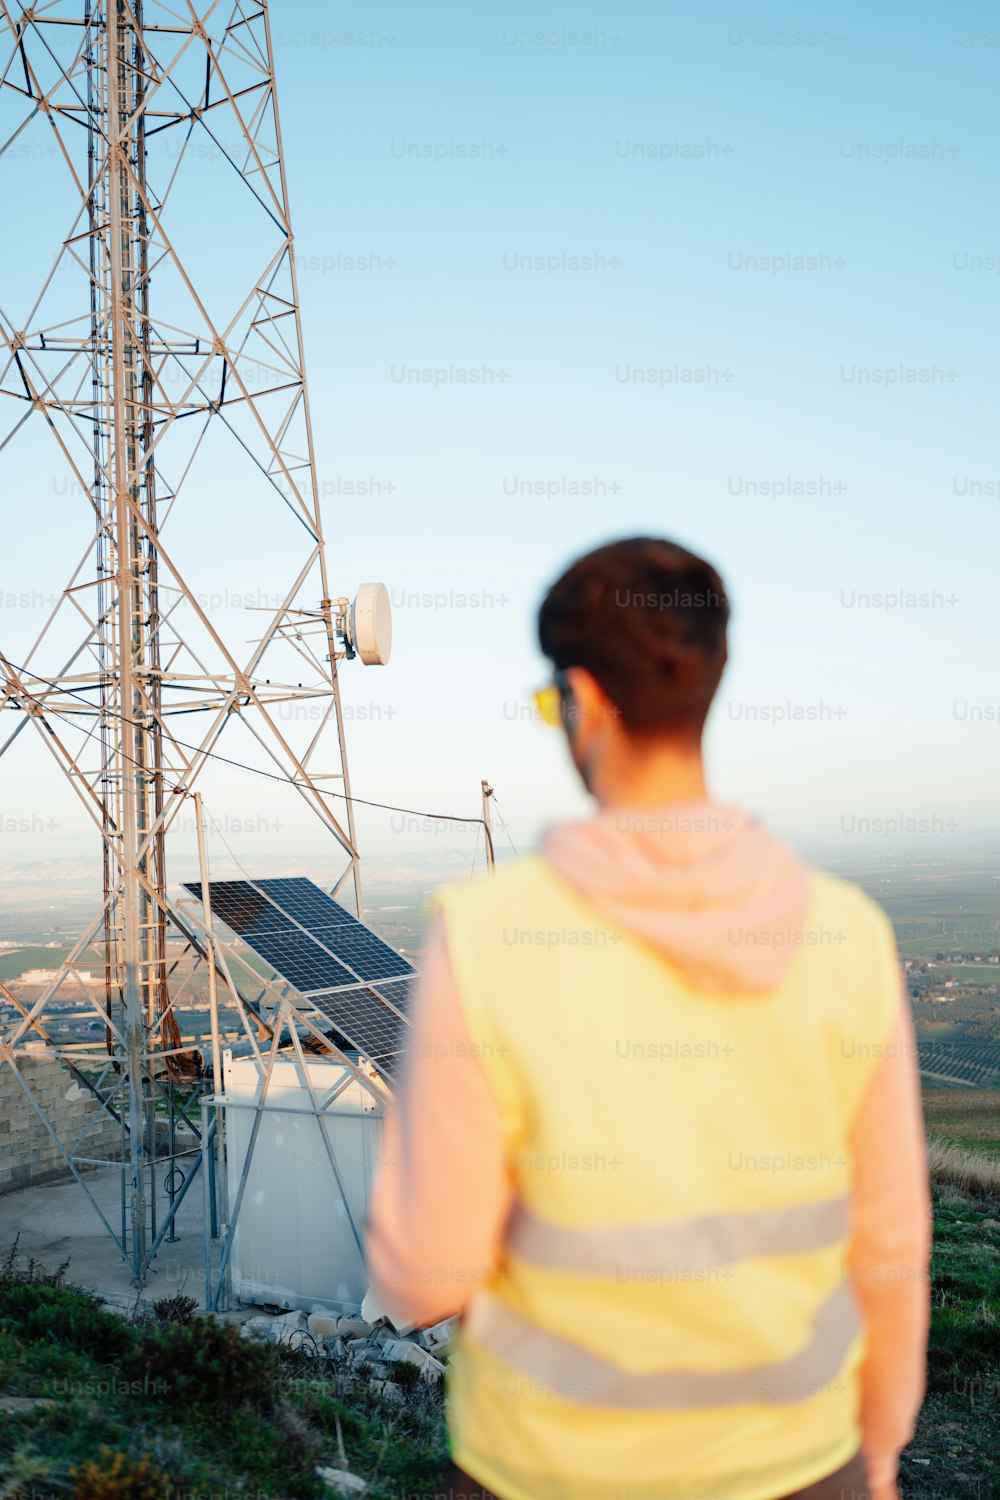 휴대폰 타워 앞에 서 있는 남자